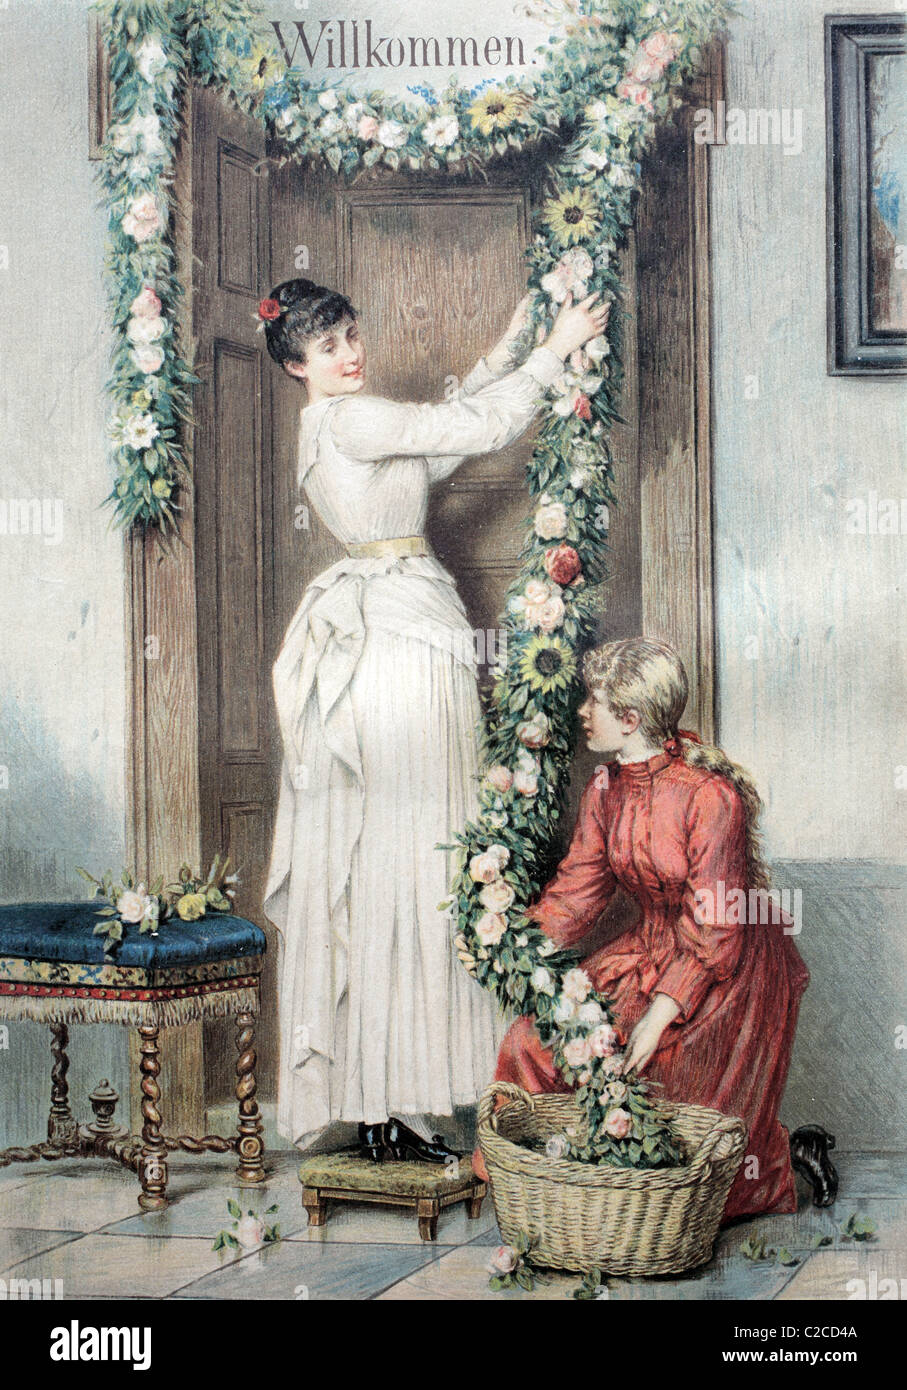 Willkommen Dekoration hängen über einer Tür, historische Abbildung ca. 1893 Stockfoto